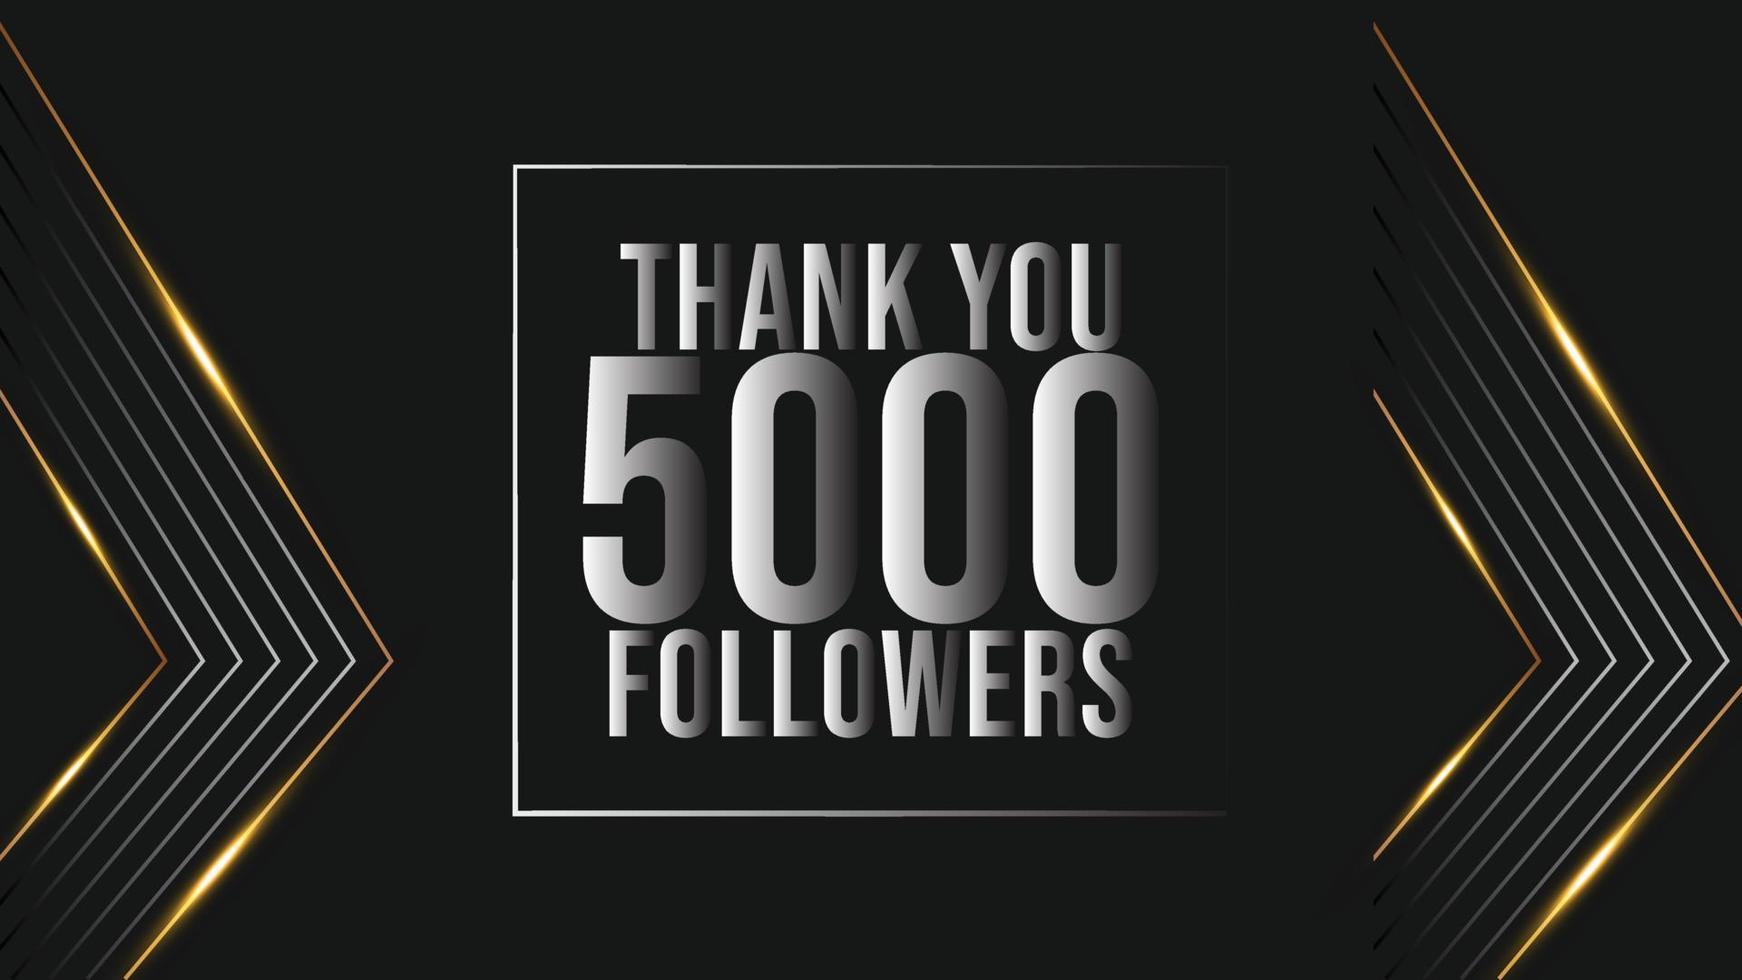 viering 5000 abonnees sjabloon voor sociaal media. 5k volgers dank u vector